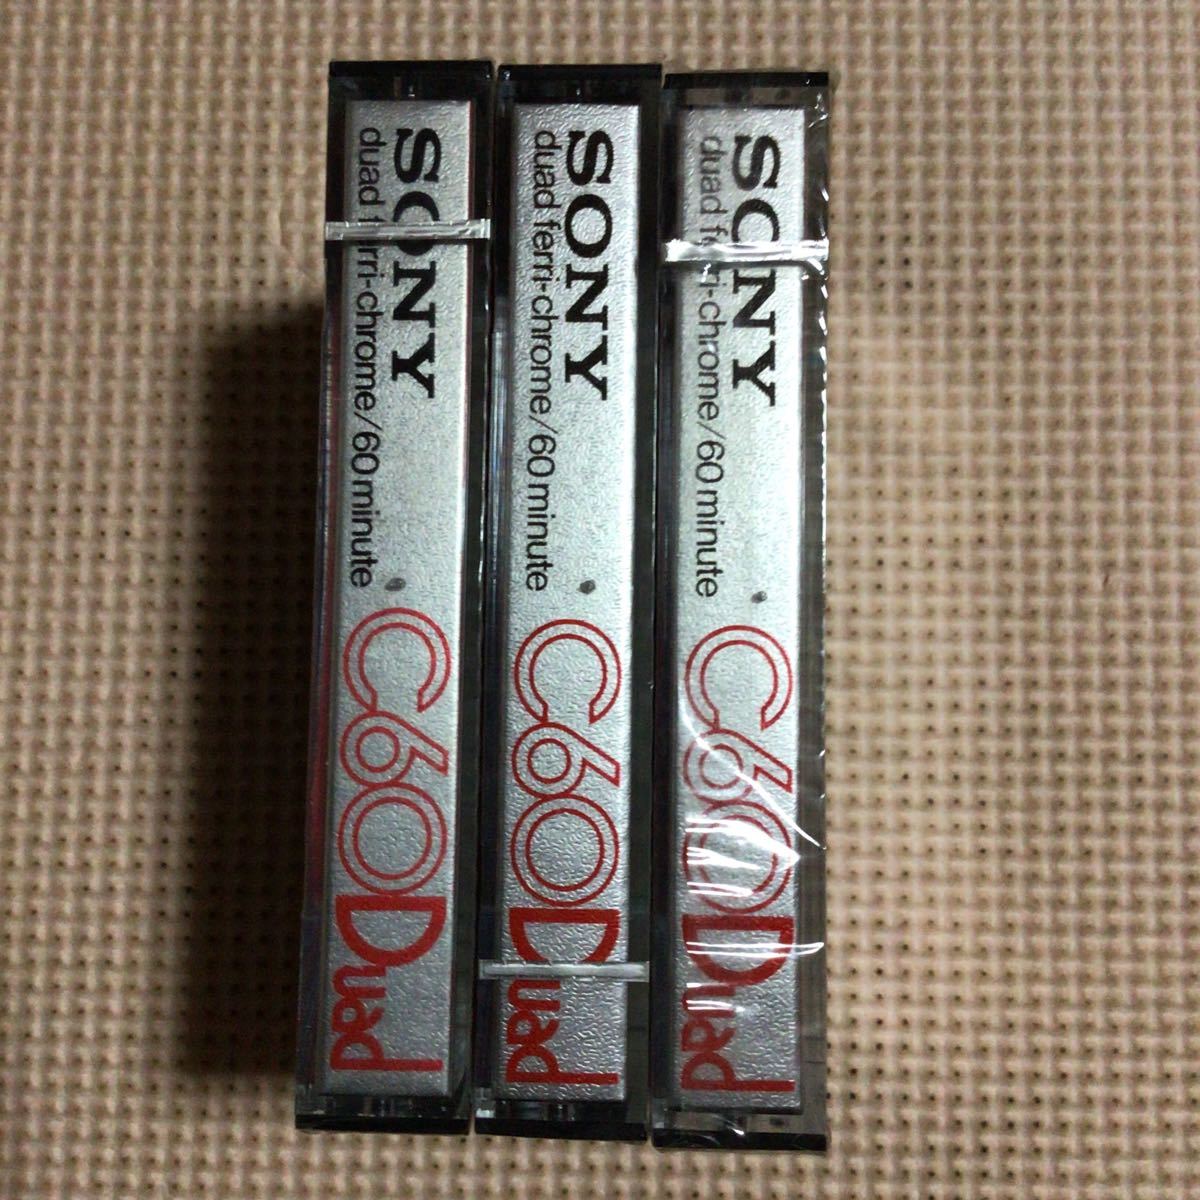 SONY DUAD 60 ferri-chrome カセットテープ3本セット【未開封新品】★_画像2